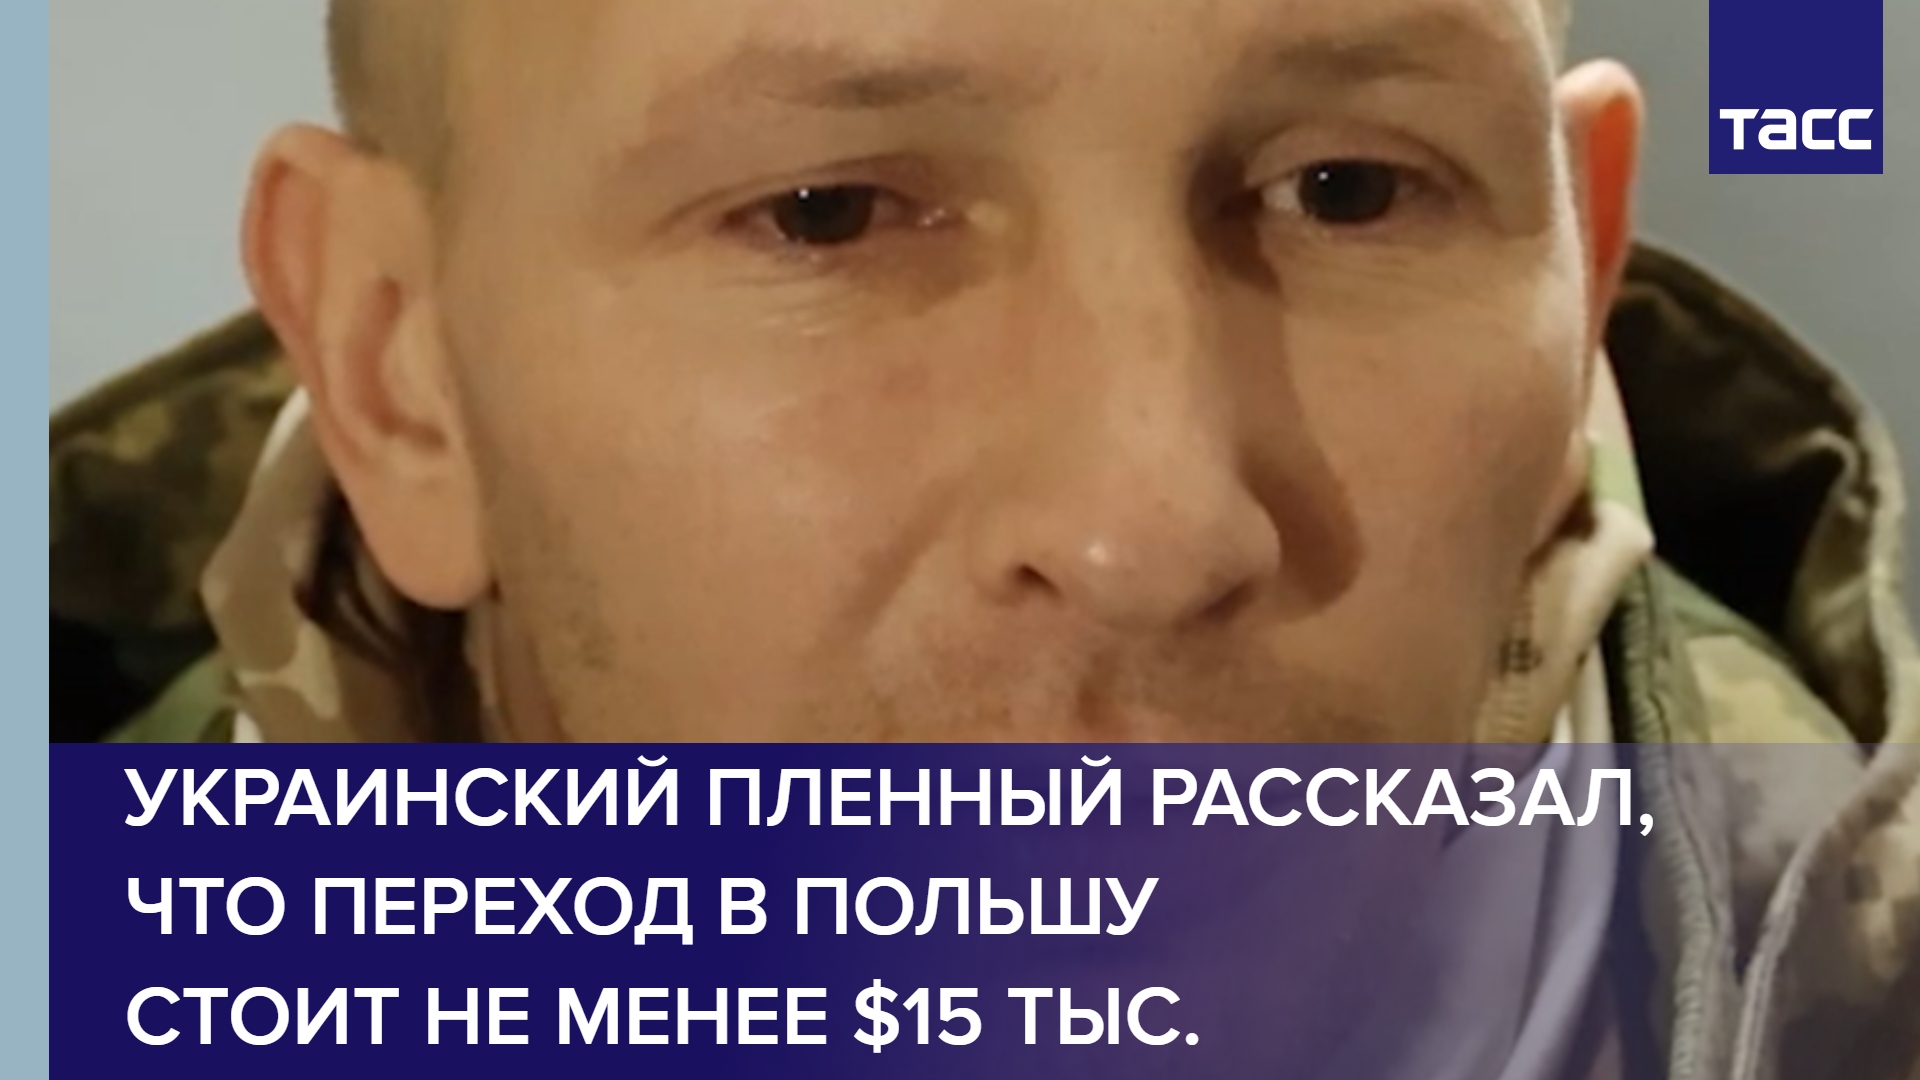 Украинский пленный рассказал, что переход в Польшу стоит не менее $15 тыс. #shorts